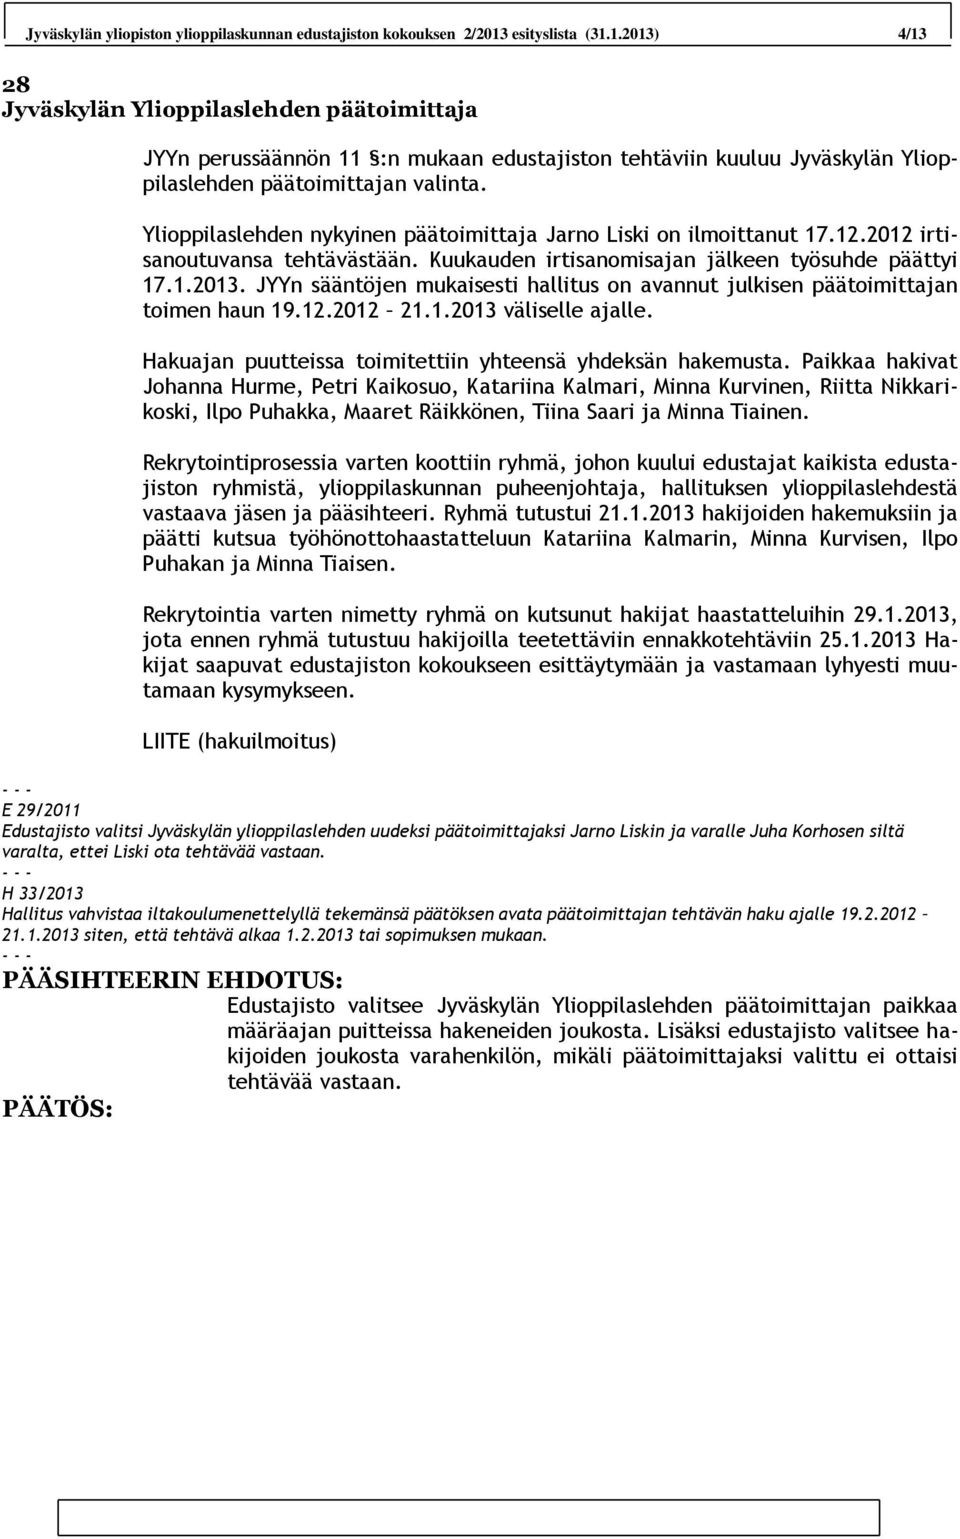 Ylioppilaslehden nykyinen päätoimittaja Jarno Liski on ilmoittanut 17.12.2012 irtisanoutuvansa tehtävästään. Kuukauden irtisanomisajan jälkeen työsuhde päättyi 17.1.2013.